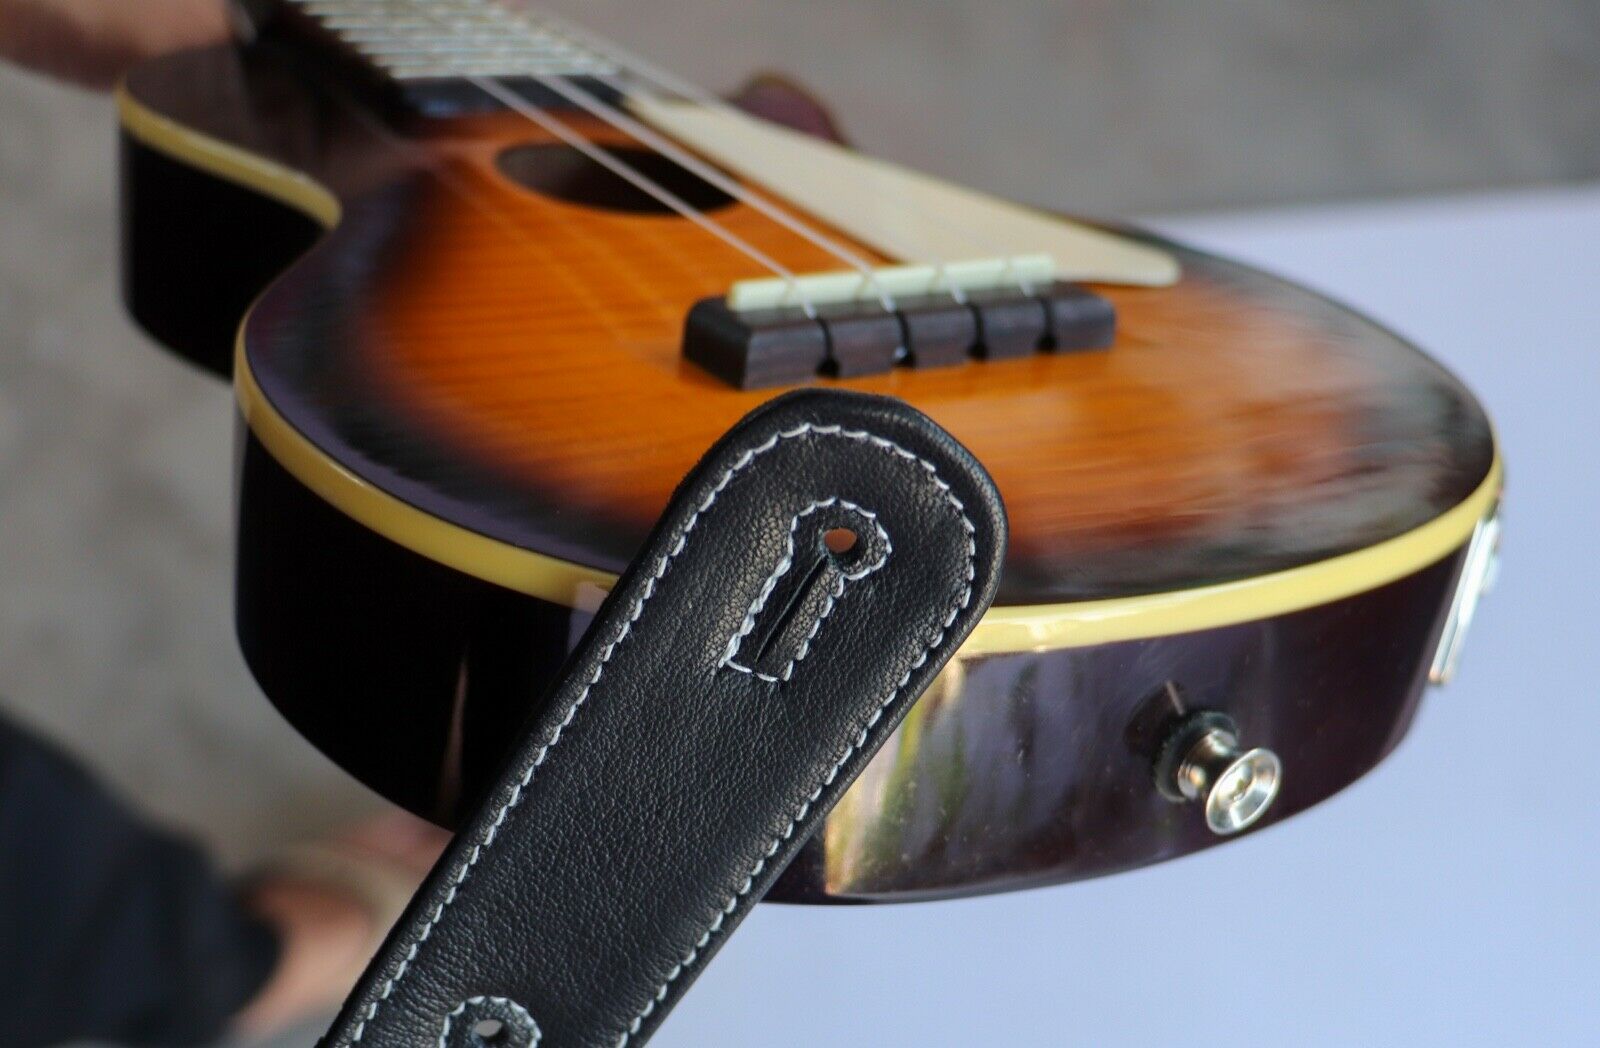 Leather Ukulele Strap Mandolins Uke Comfortable Adjustable